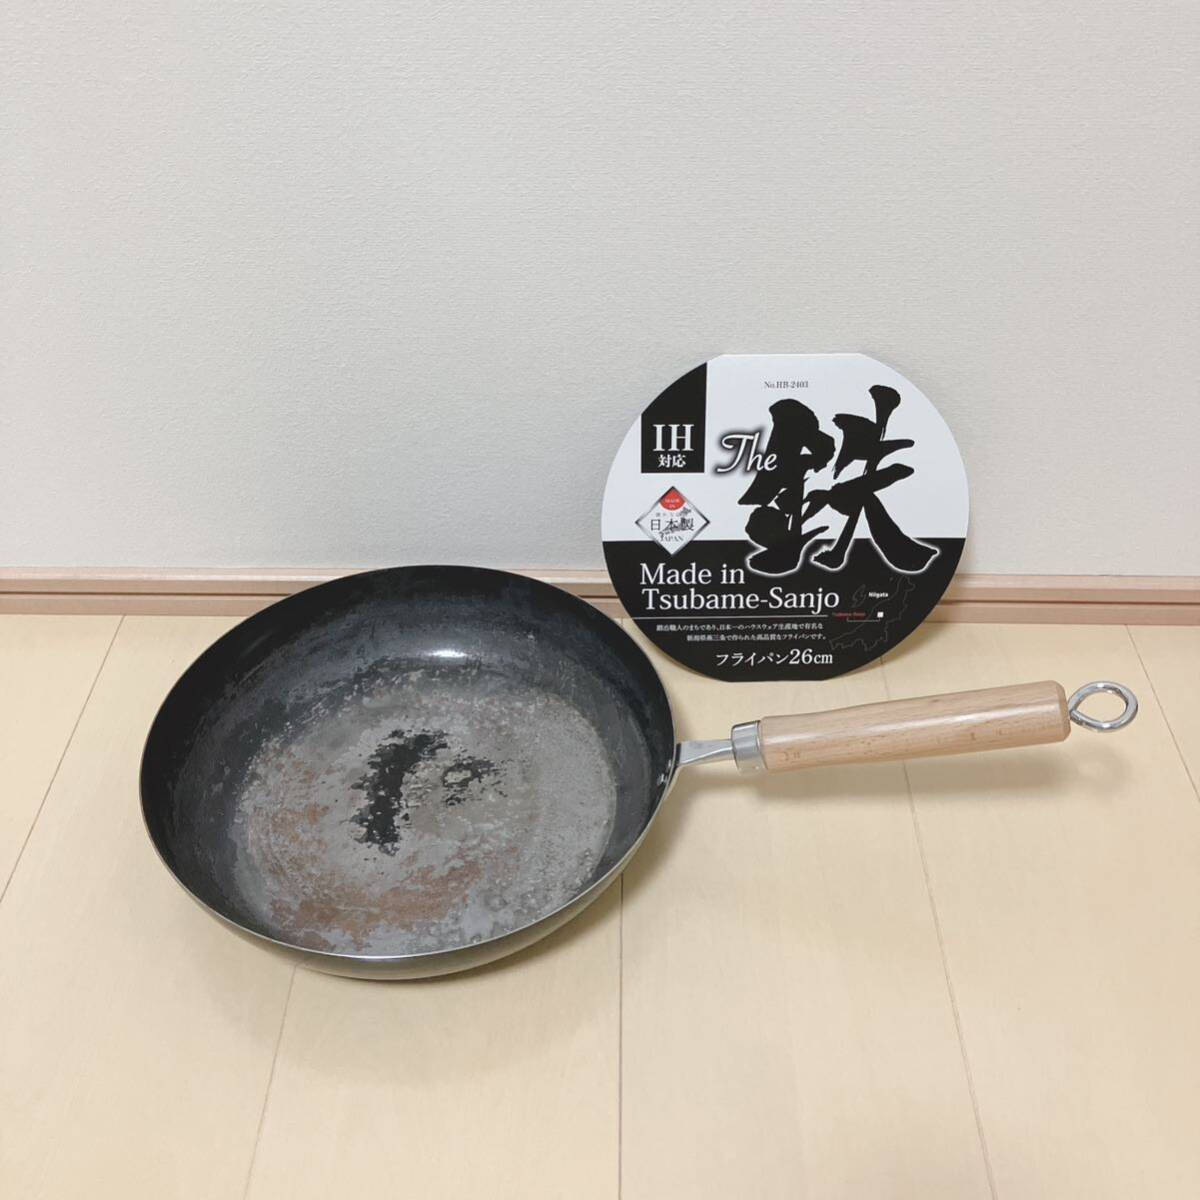  сковорода 26cm металлический сделано в Японии Niigata префектура . три статья товары для кухни кухонная утварь IH соответствует жемчуг металл The металлический 